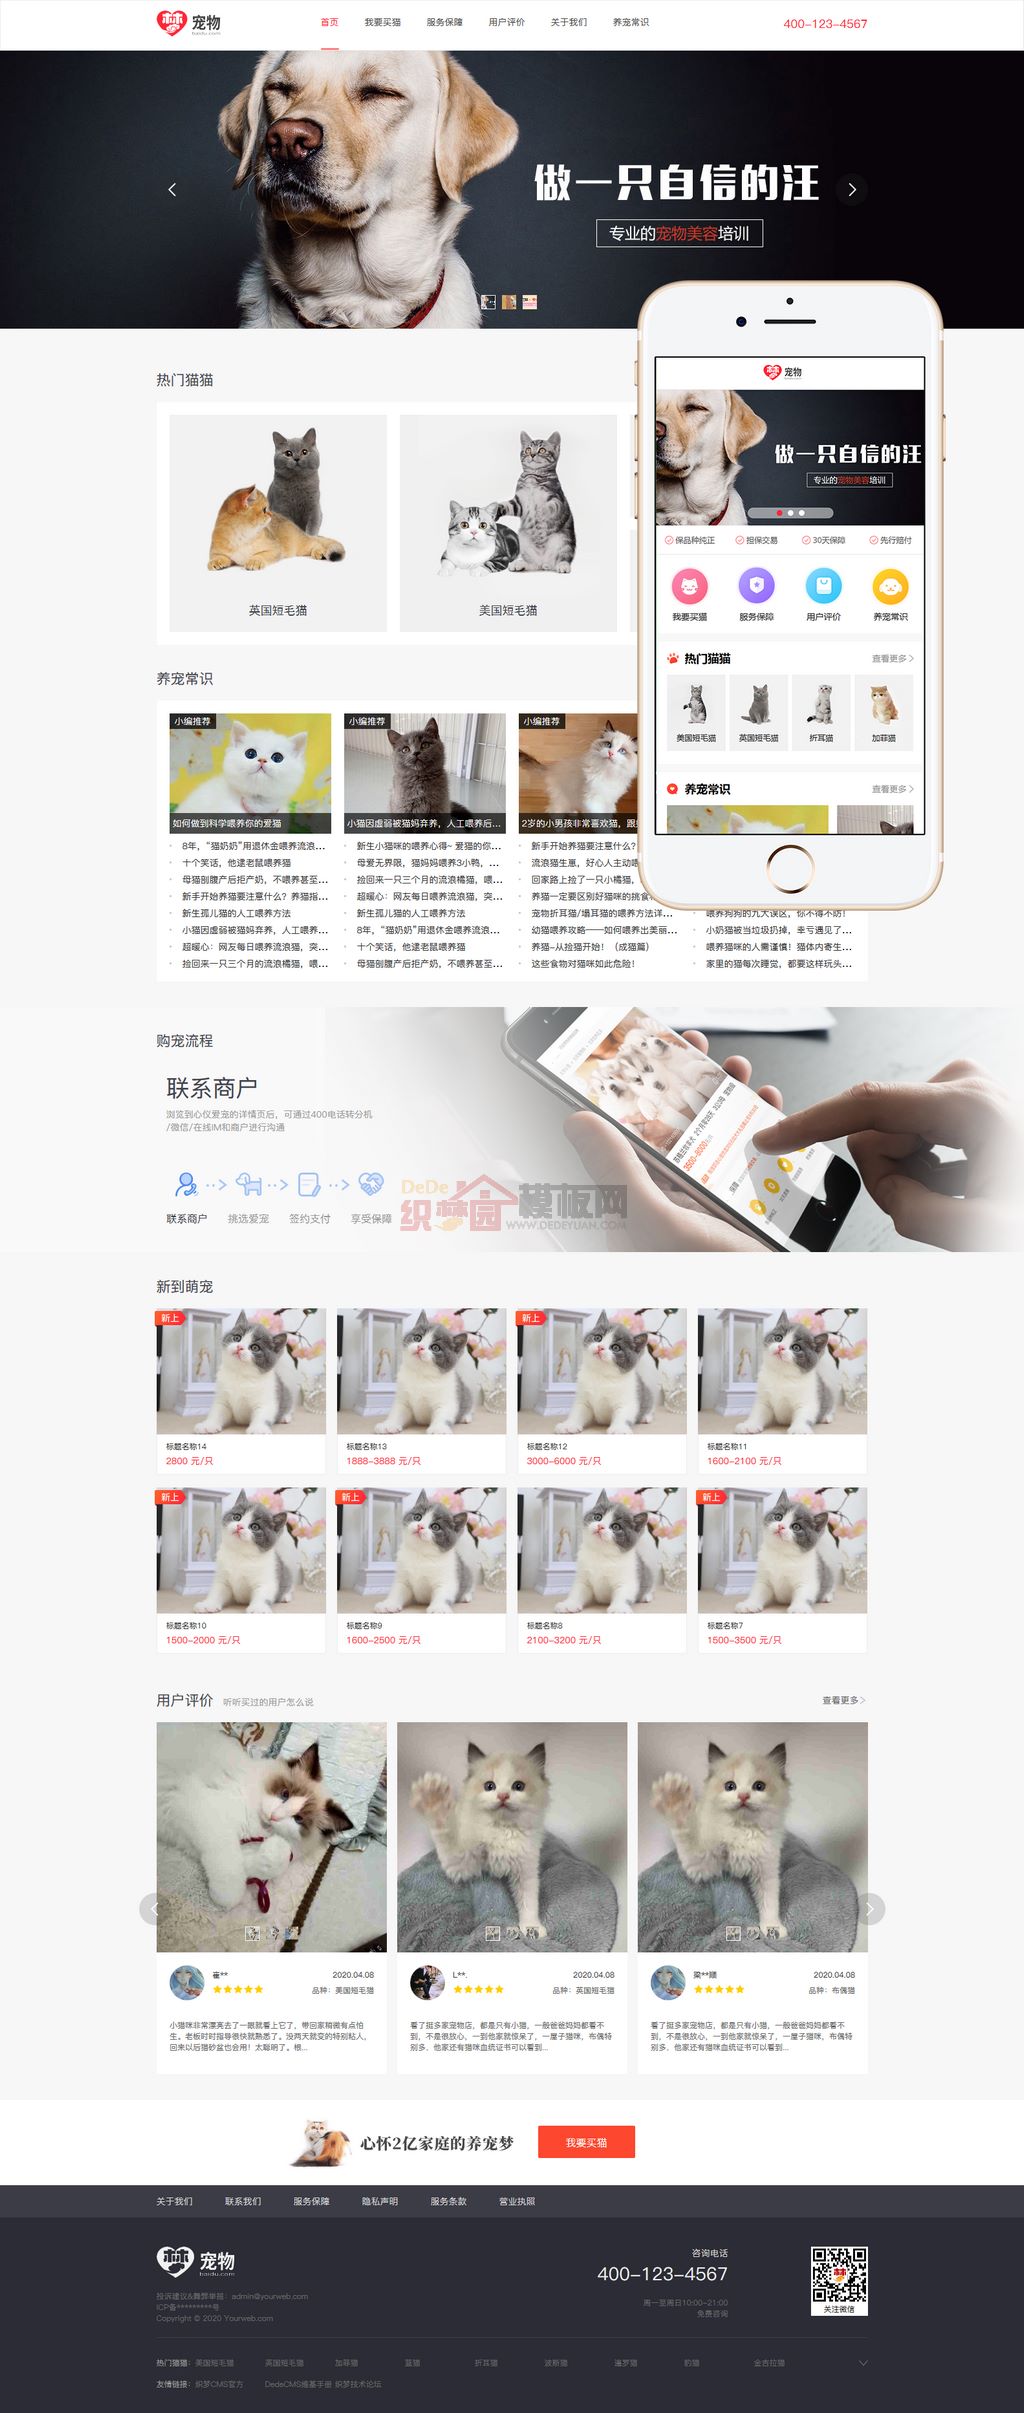 宠物交易担保服务宠物展示交易平台WordPress网站主题模板演示图